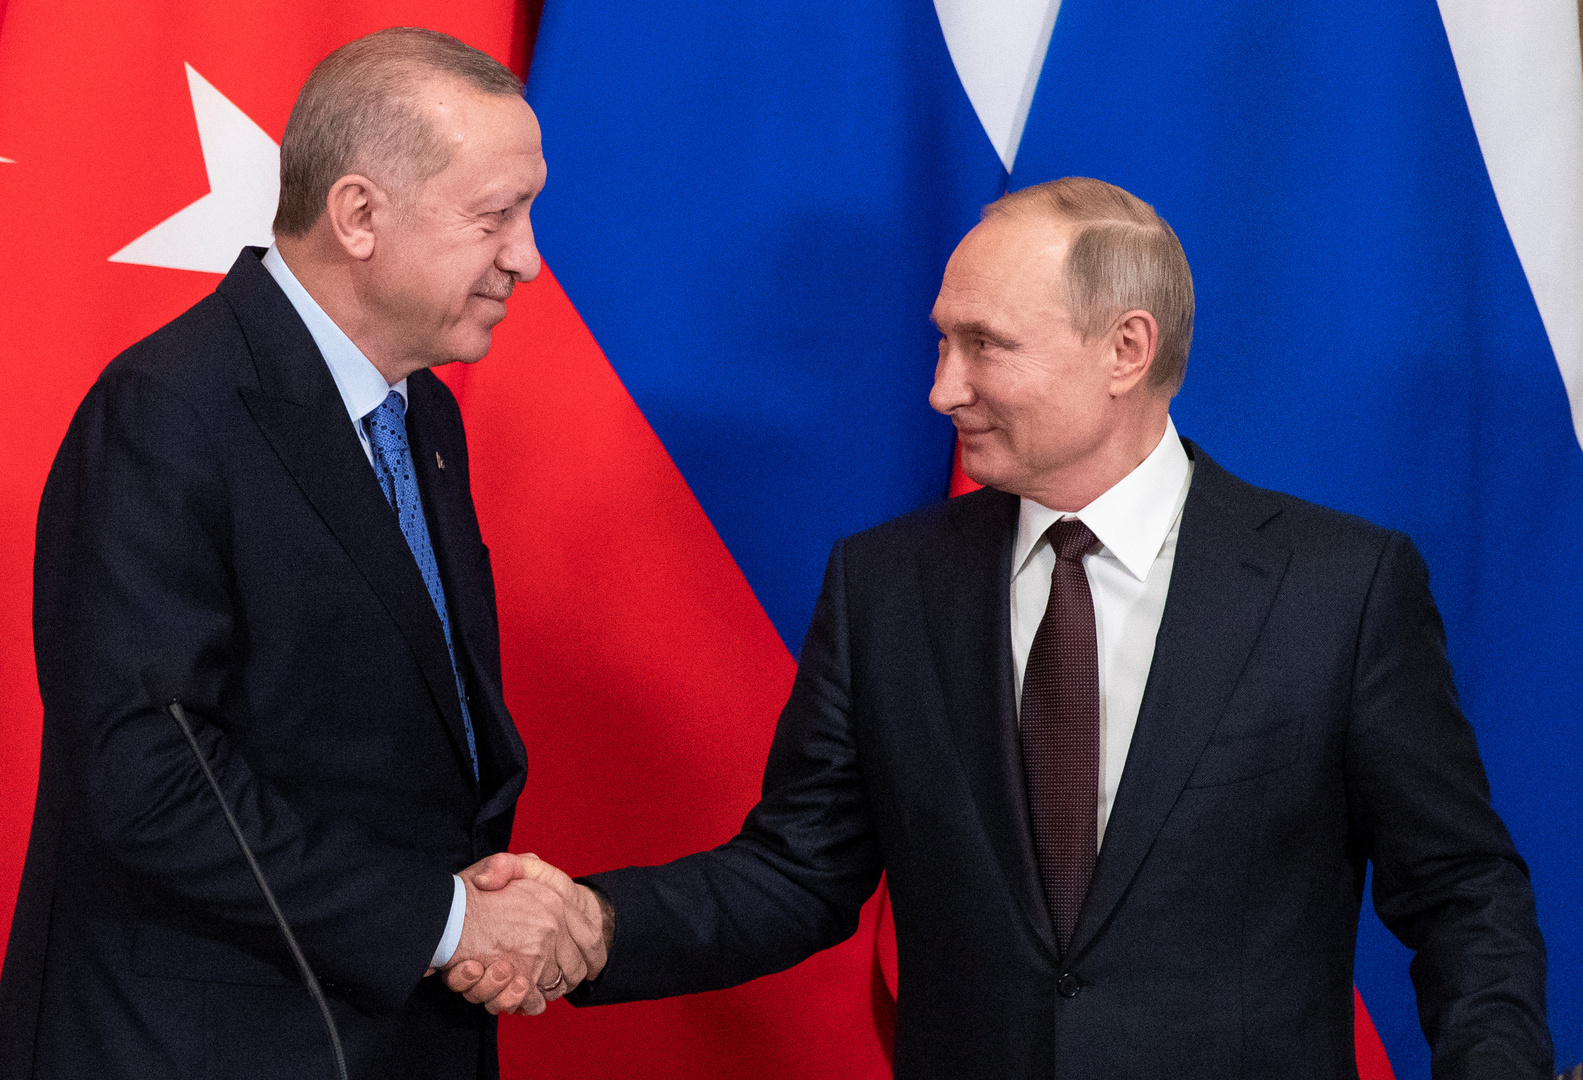 بوتين وأردوغان يؤكدان الاستعداد لمواصلة التنسيق حول قضية قره باغ